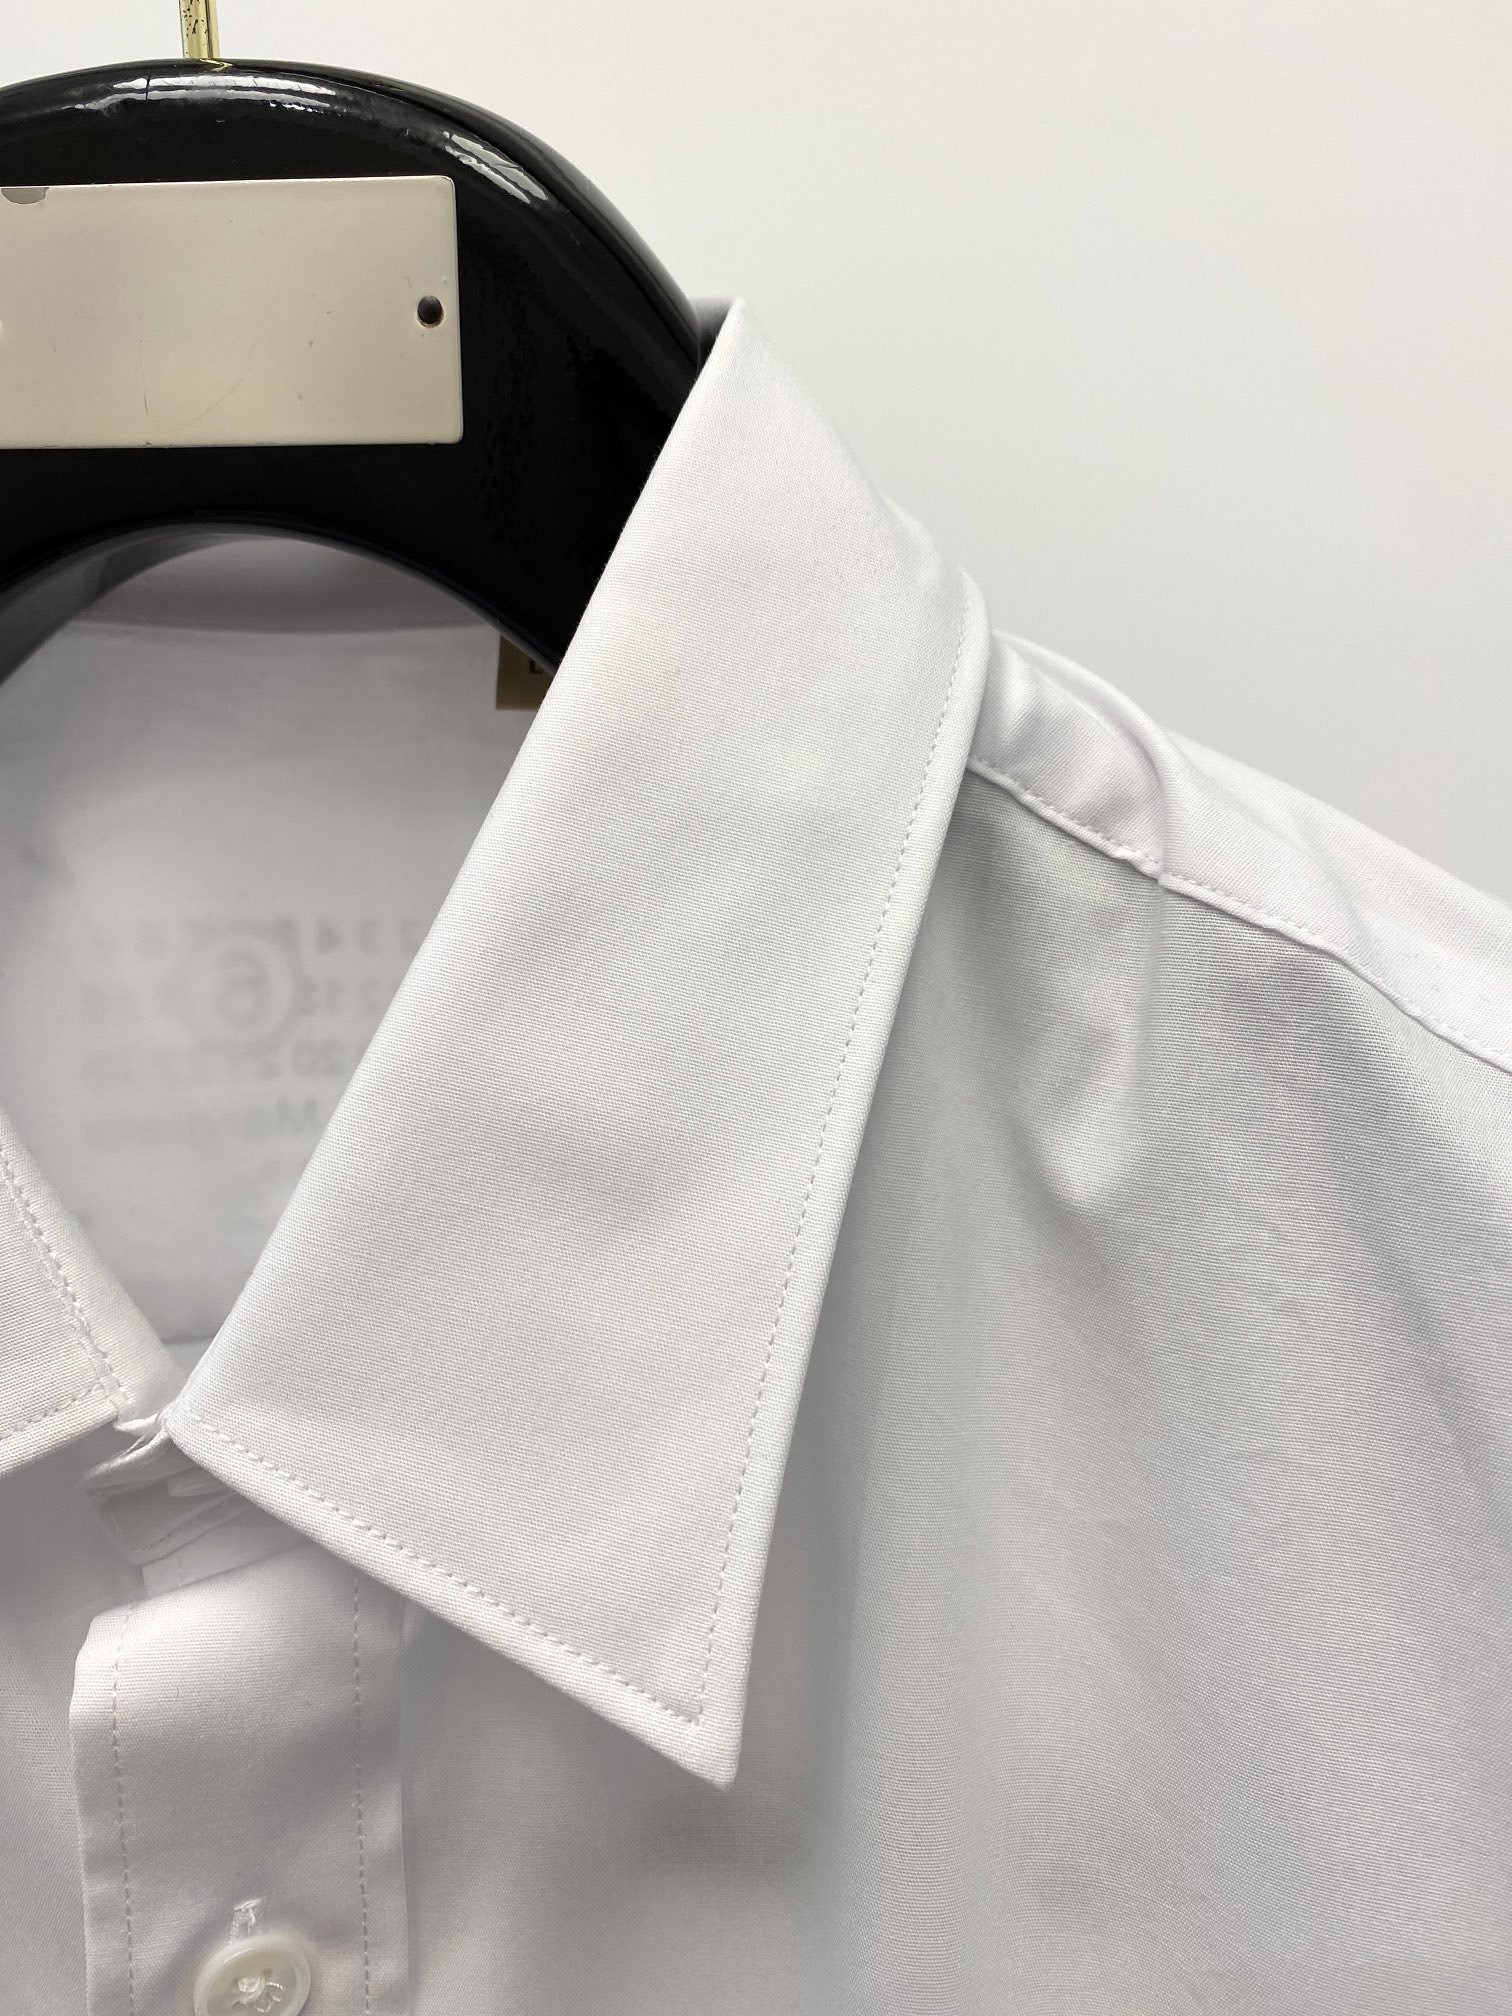 麦吉拉2024新款衬衫打造时装艺术感立体剪裁修身版型上身效果很帅气微彰显品位整体细节可以对比效果非常有型